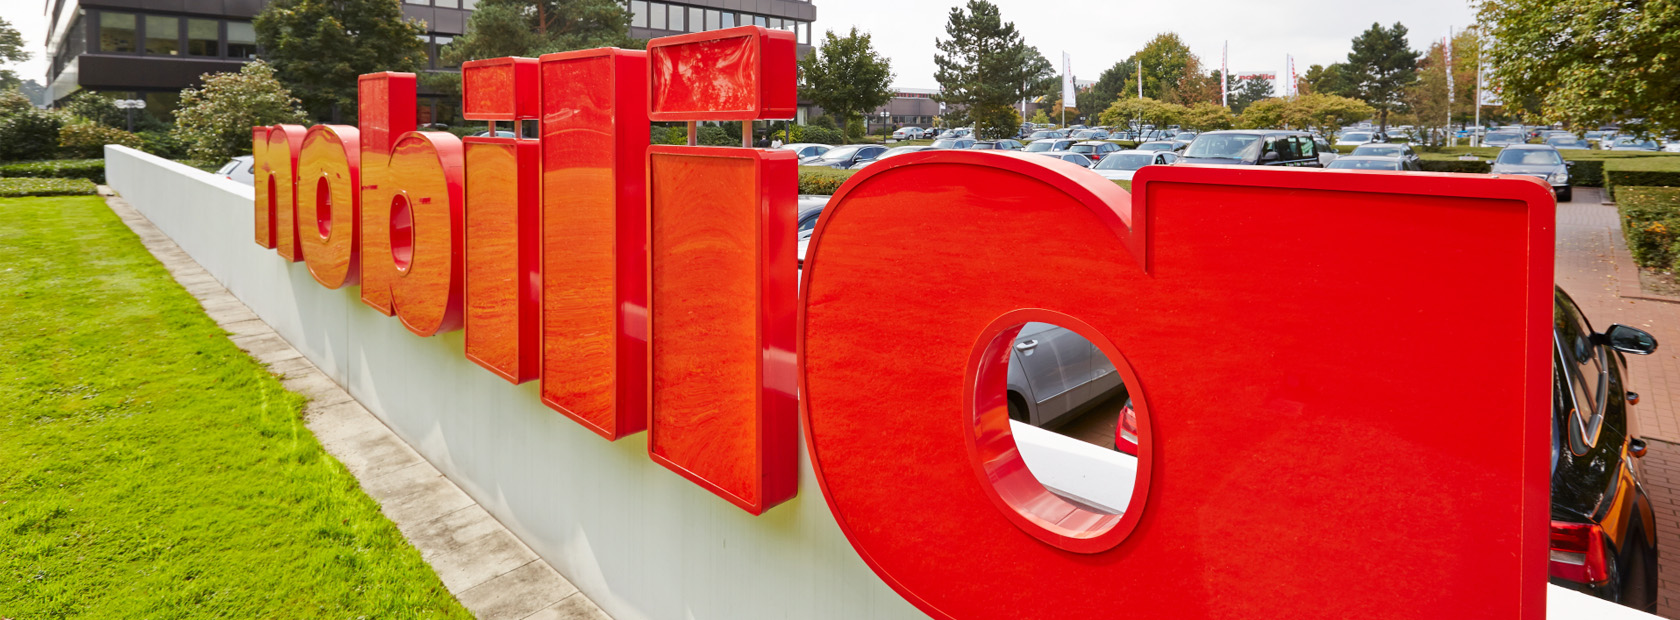 Letreros tridimensionales rojos formando una palabra instalados al aire libre, con exuberante vegetación y un edificio moderno en el fondo.